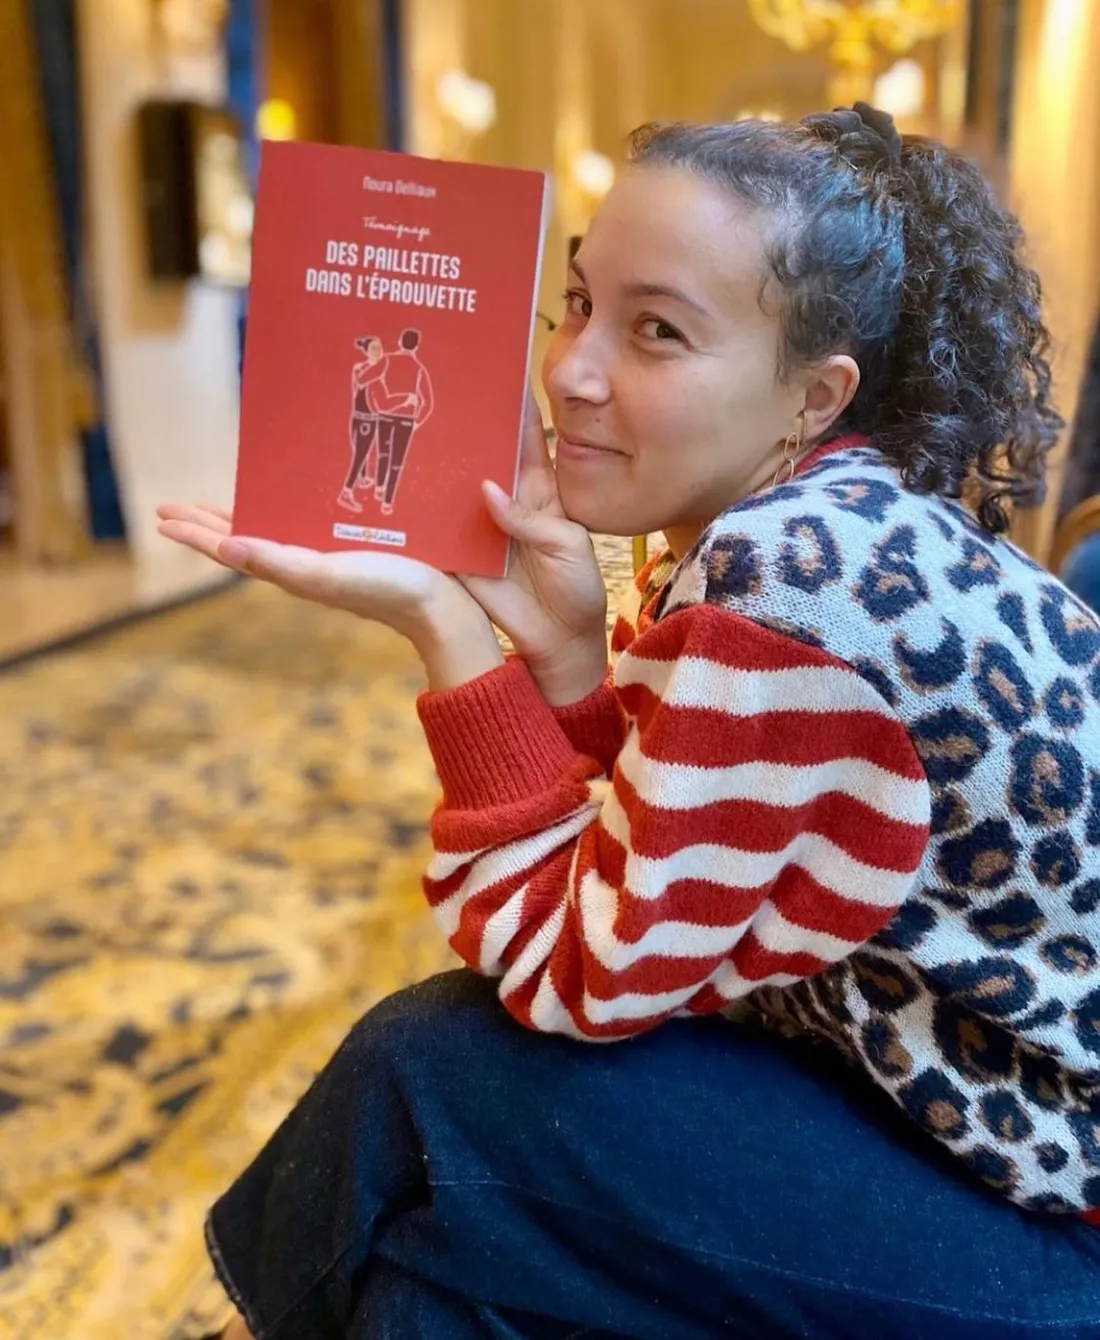 Noura Delliaux avec son livre "Des paillettes dans l’éprouvette”